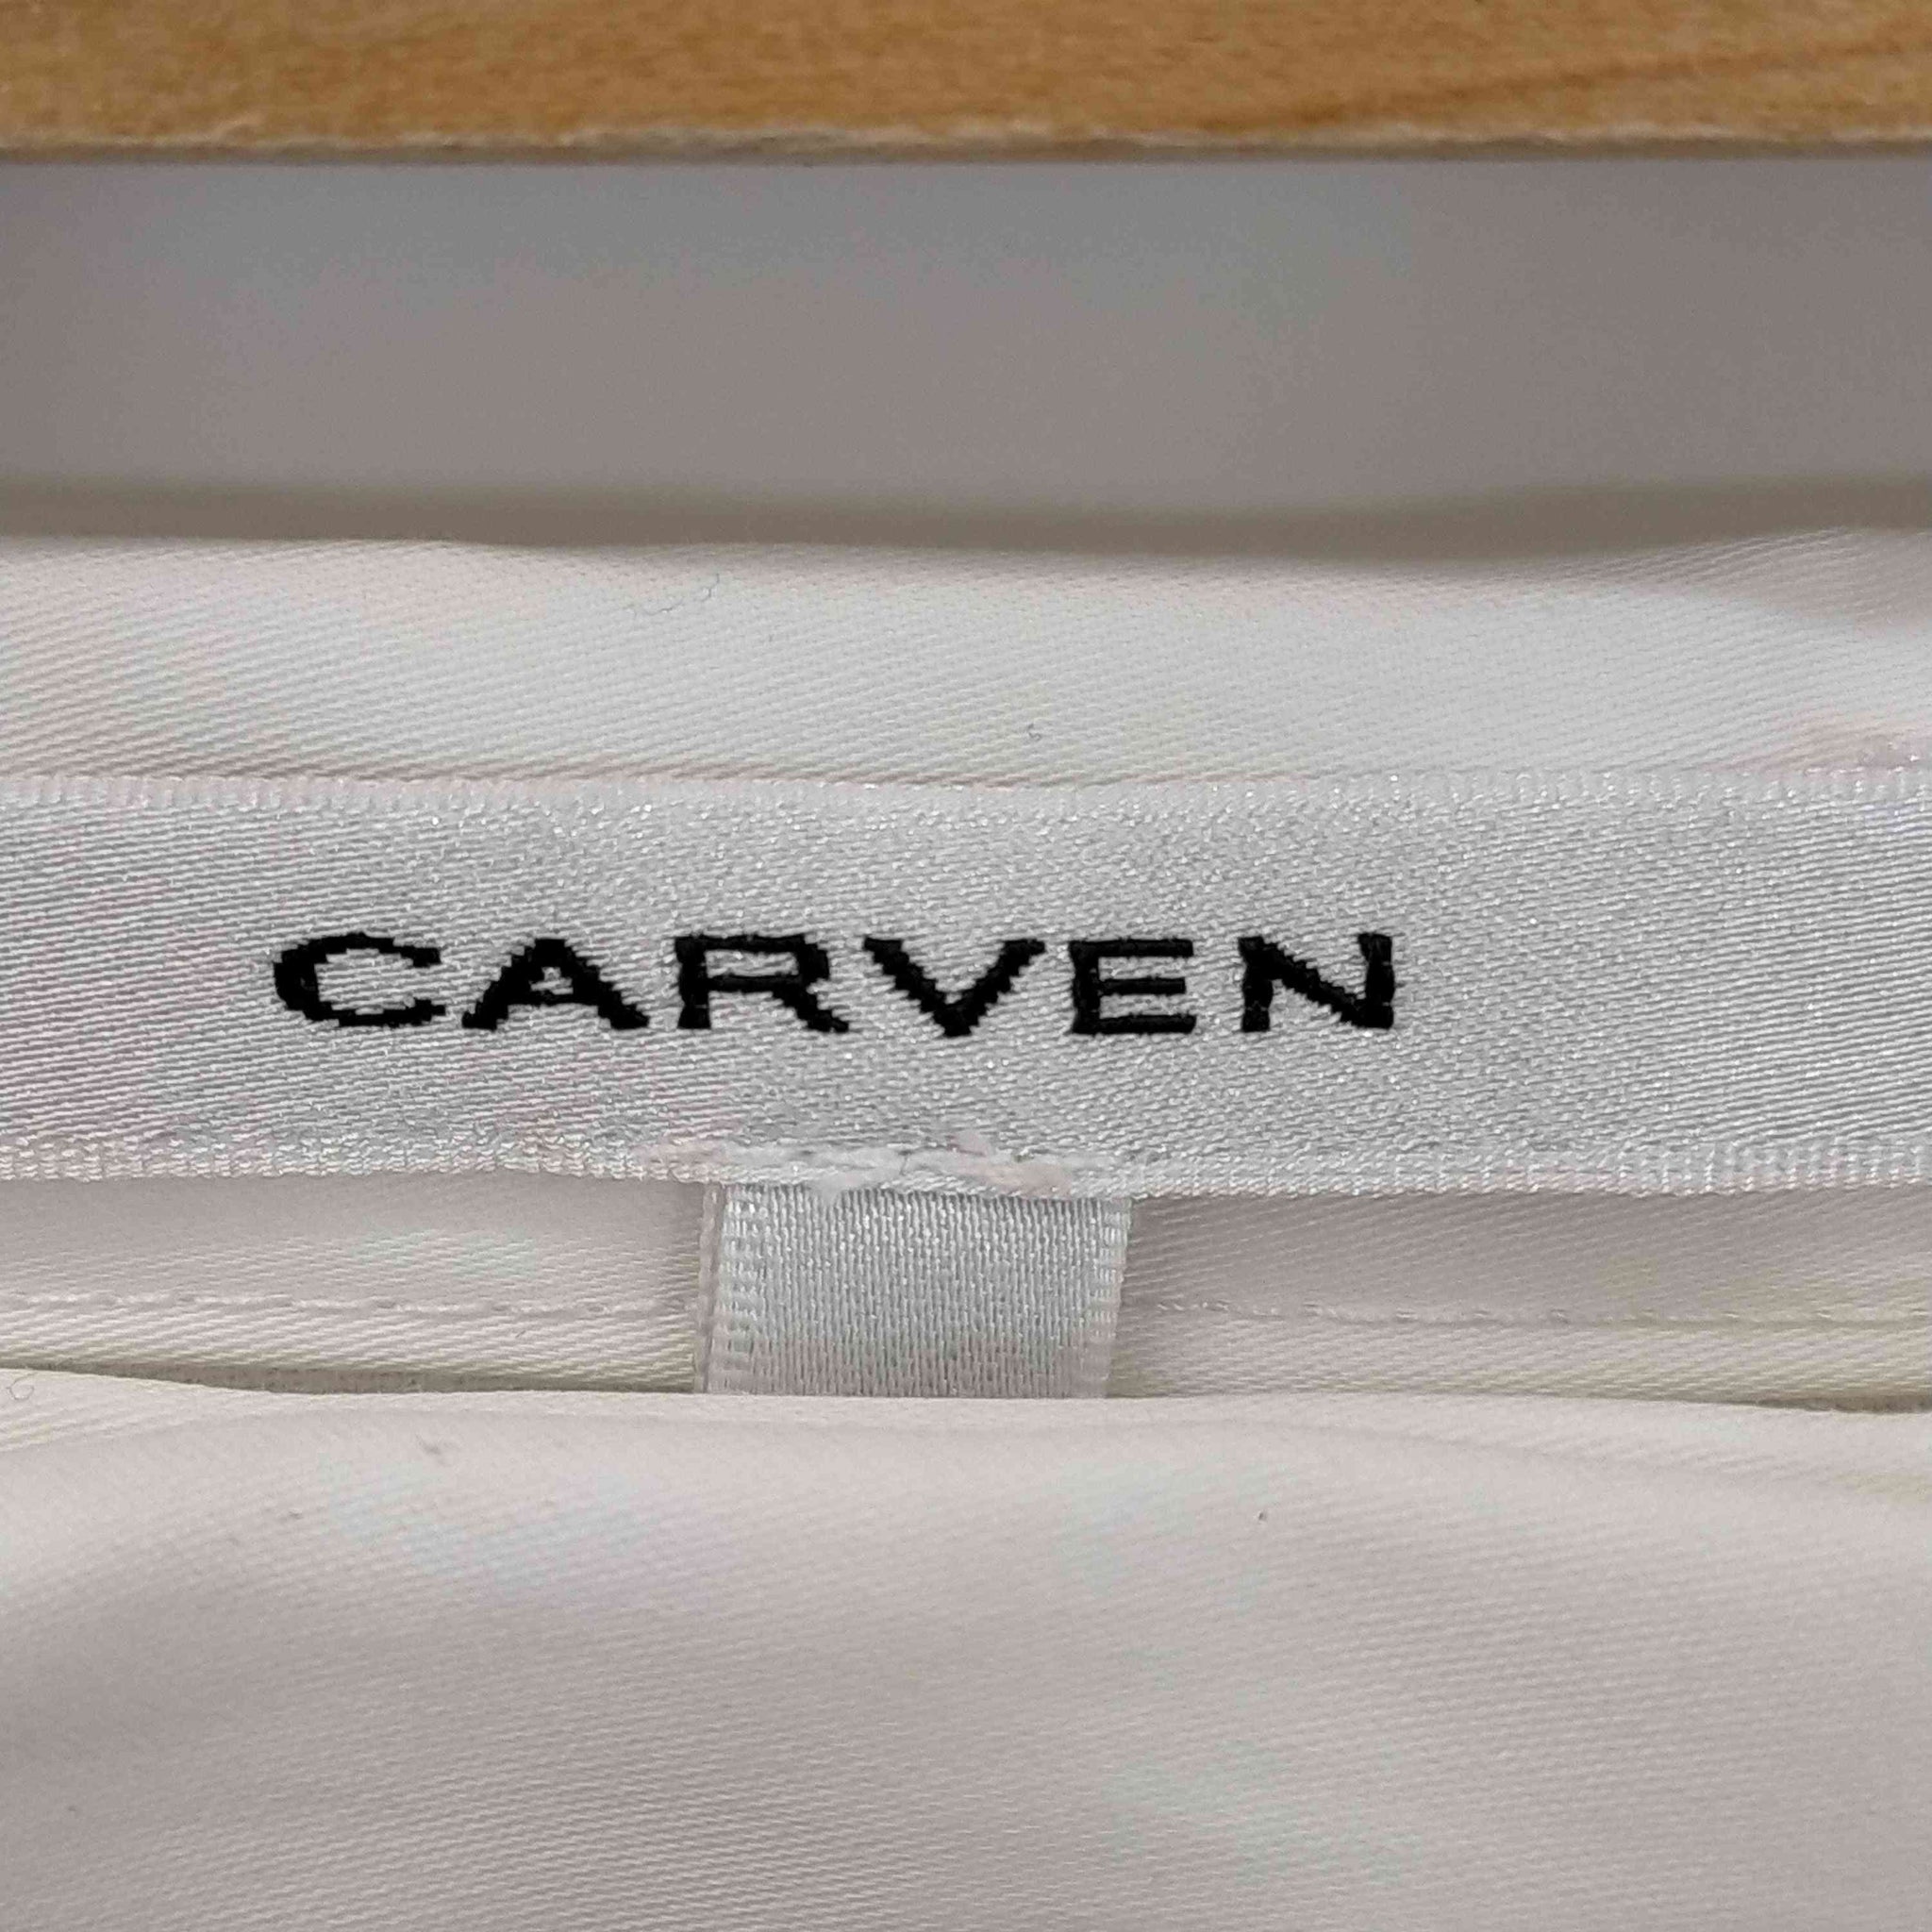 CARVEN(カルヴェン)シルク混 ナイロン フロッキー フラワーパターン スカート